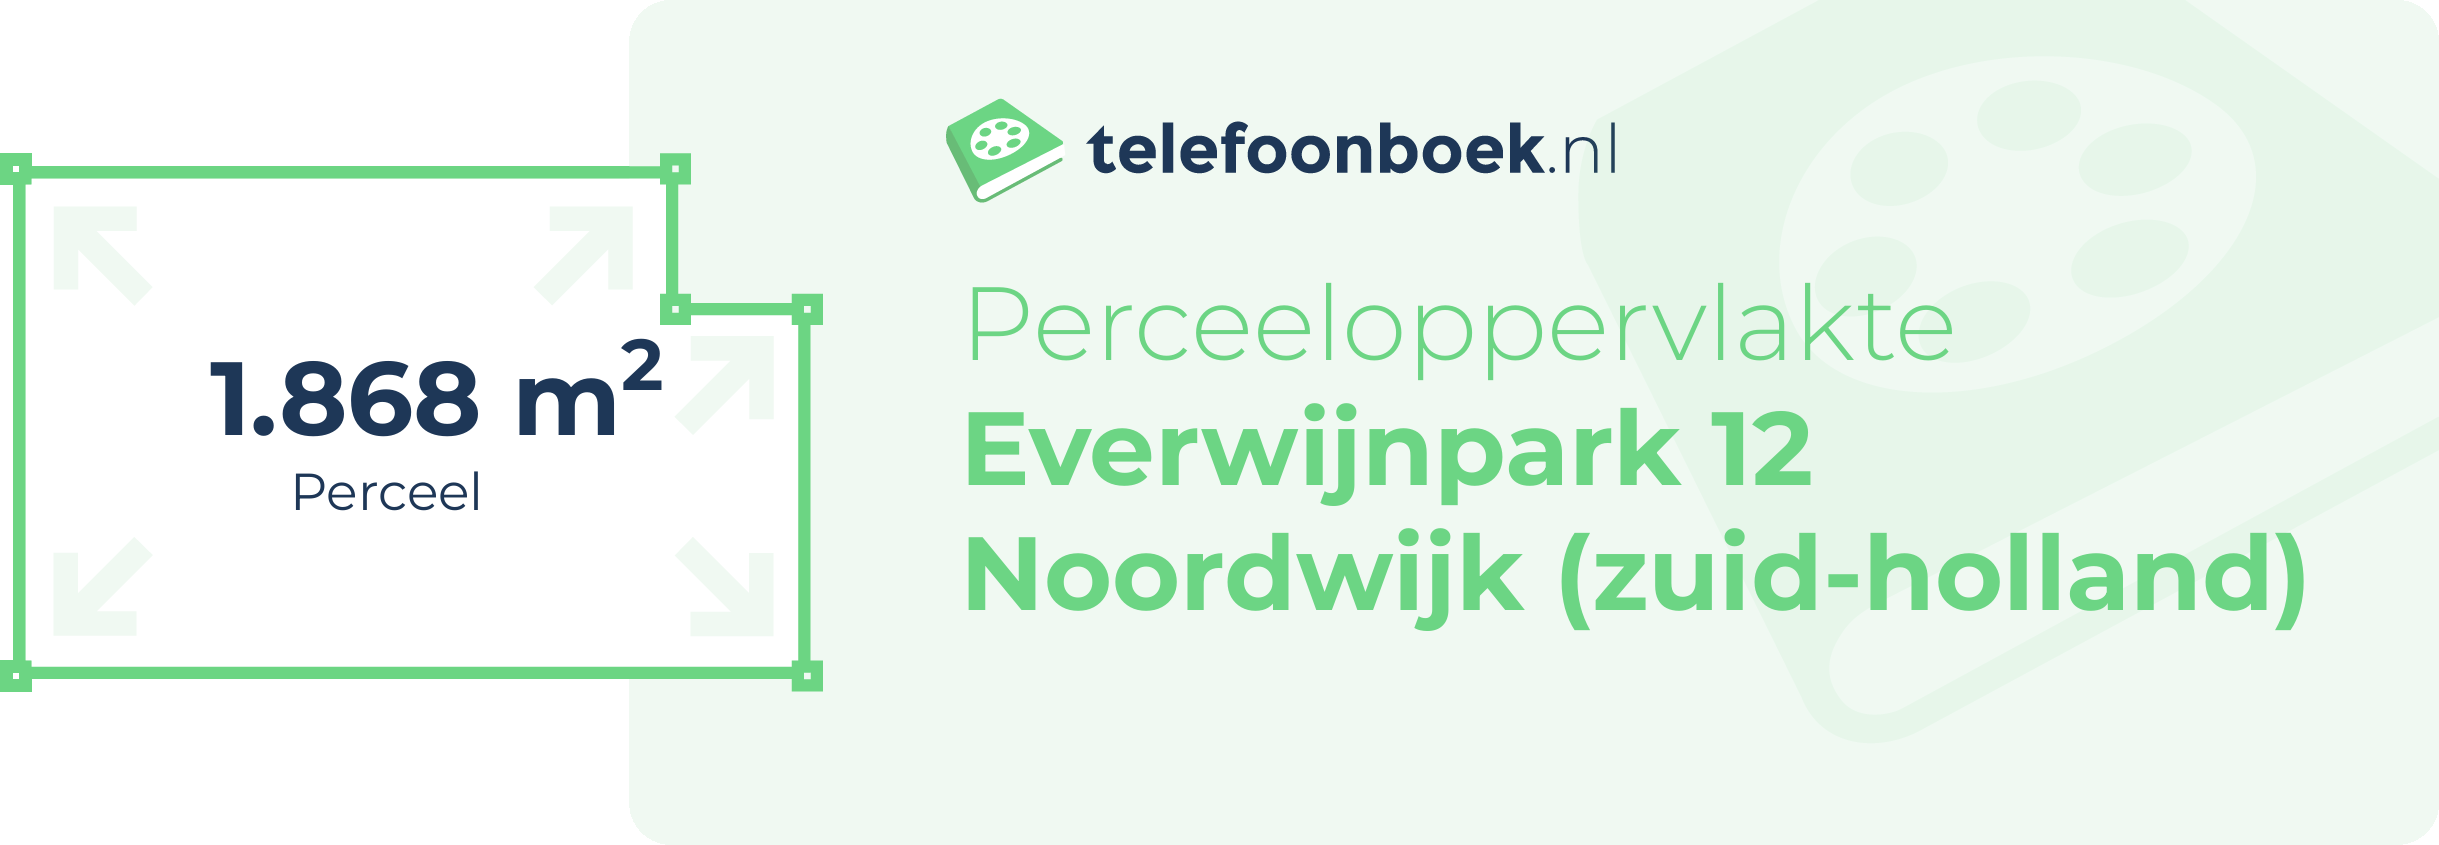 Perceeloppervlakte Everwijnpark 12 Noordwijk (Zuid-Holland)